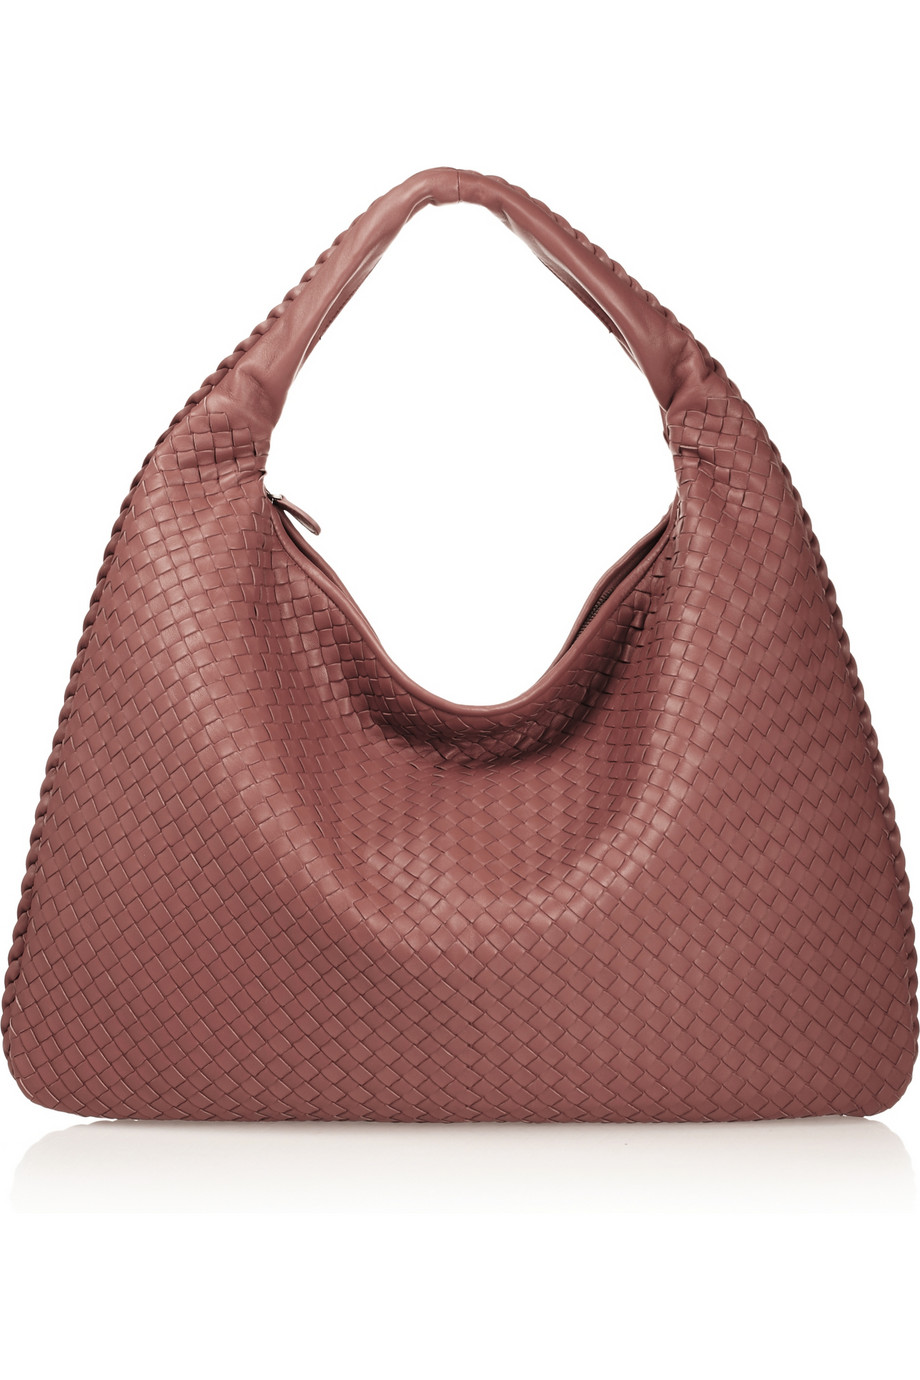 Bottega Veneta Maxi Veneta Intrecciato Leather Shoulder Bag in Red ...